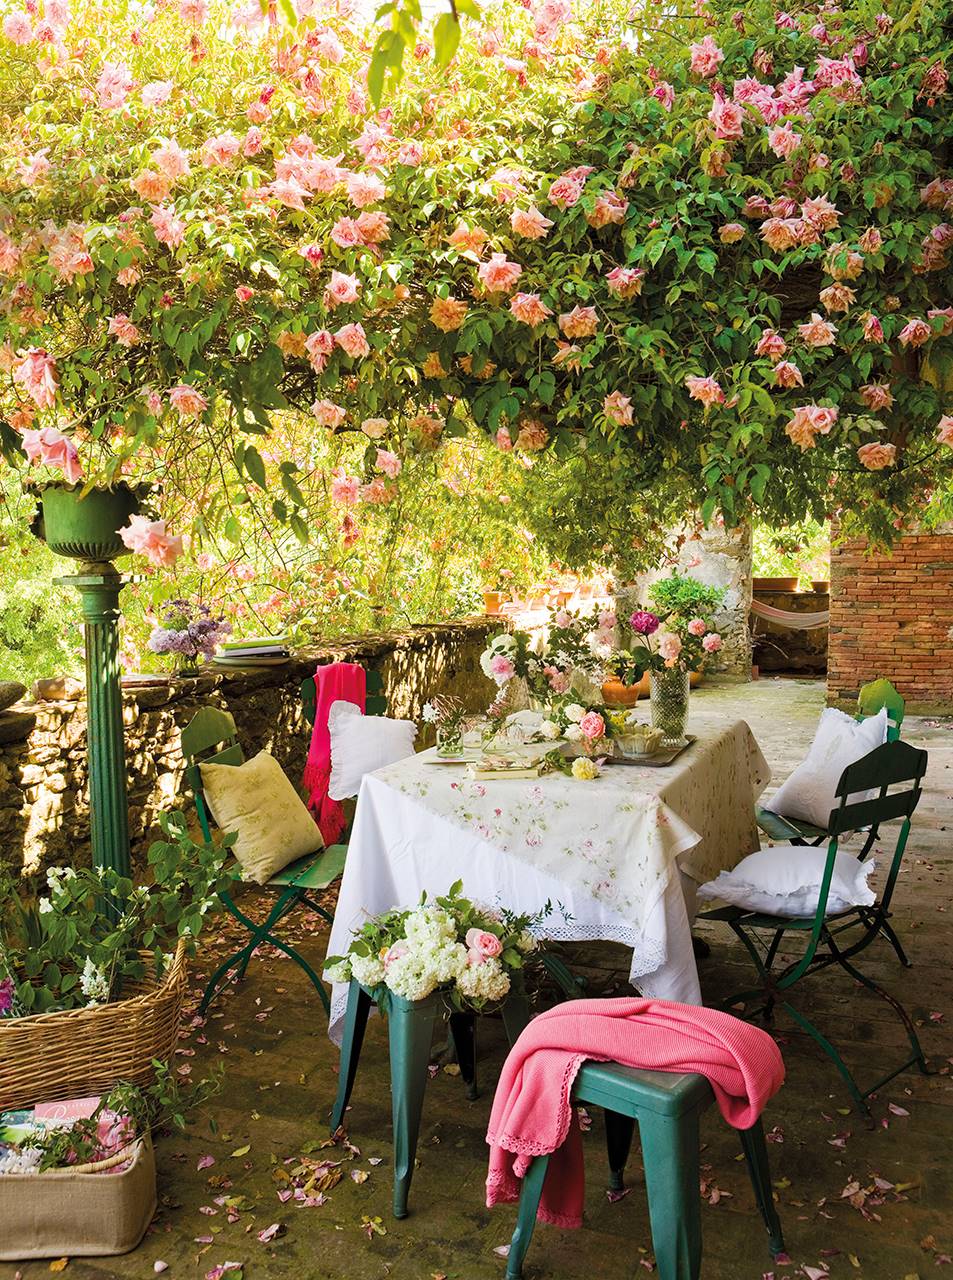 Plantas trepadoras y enredaderas: un porche cubierto por un rosal trepador con flor rosa